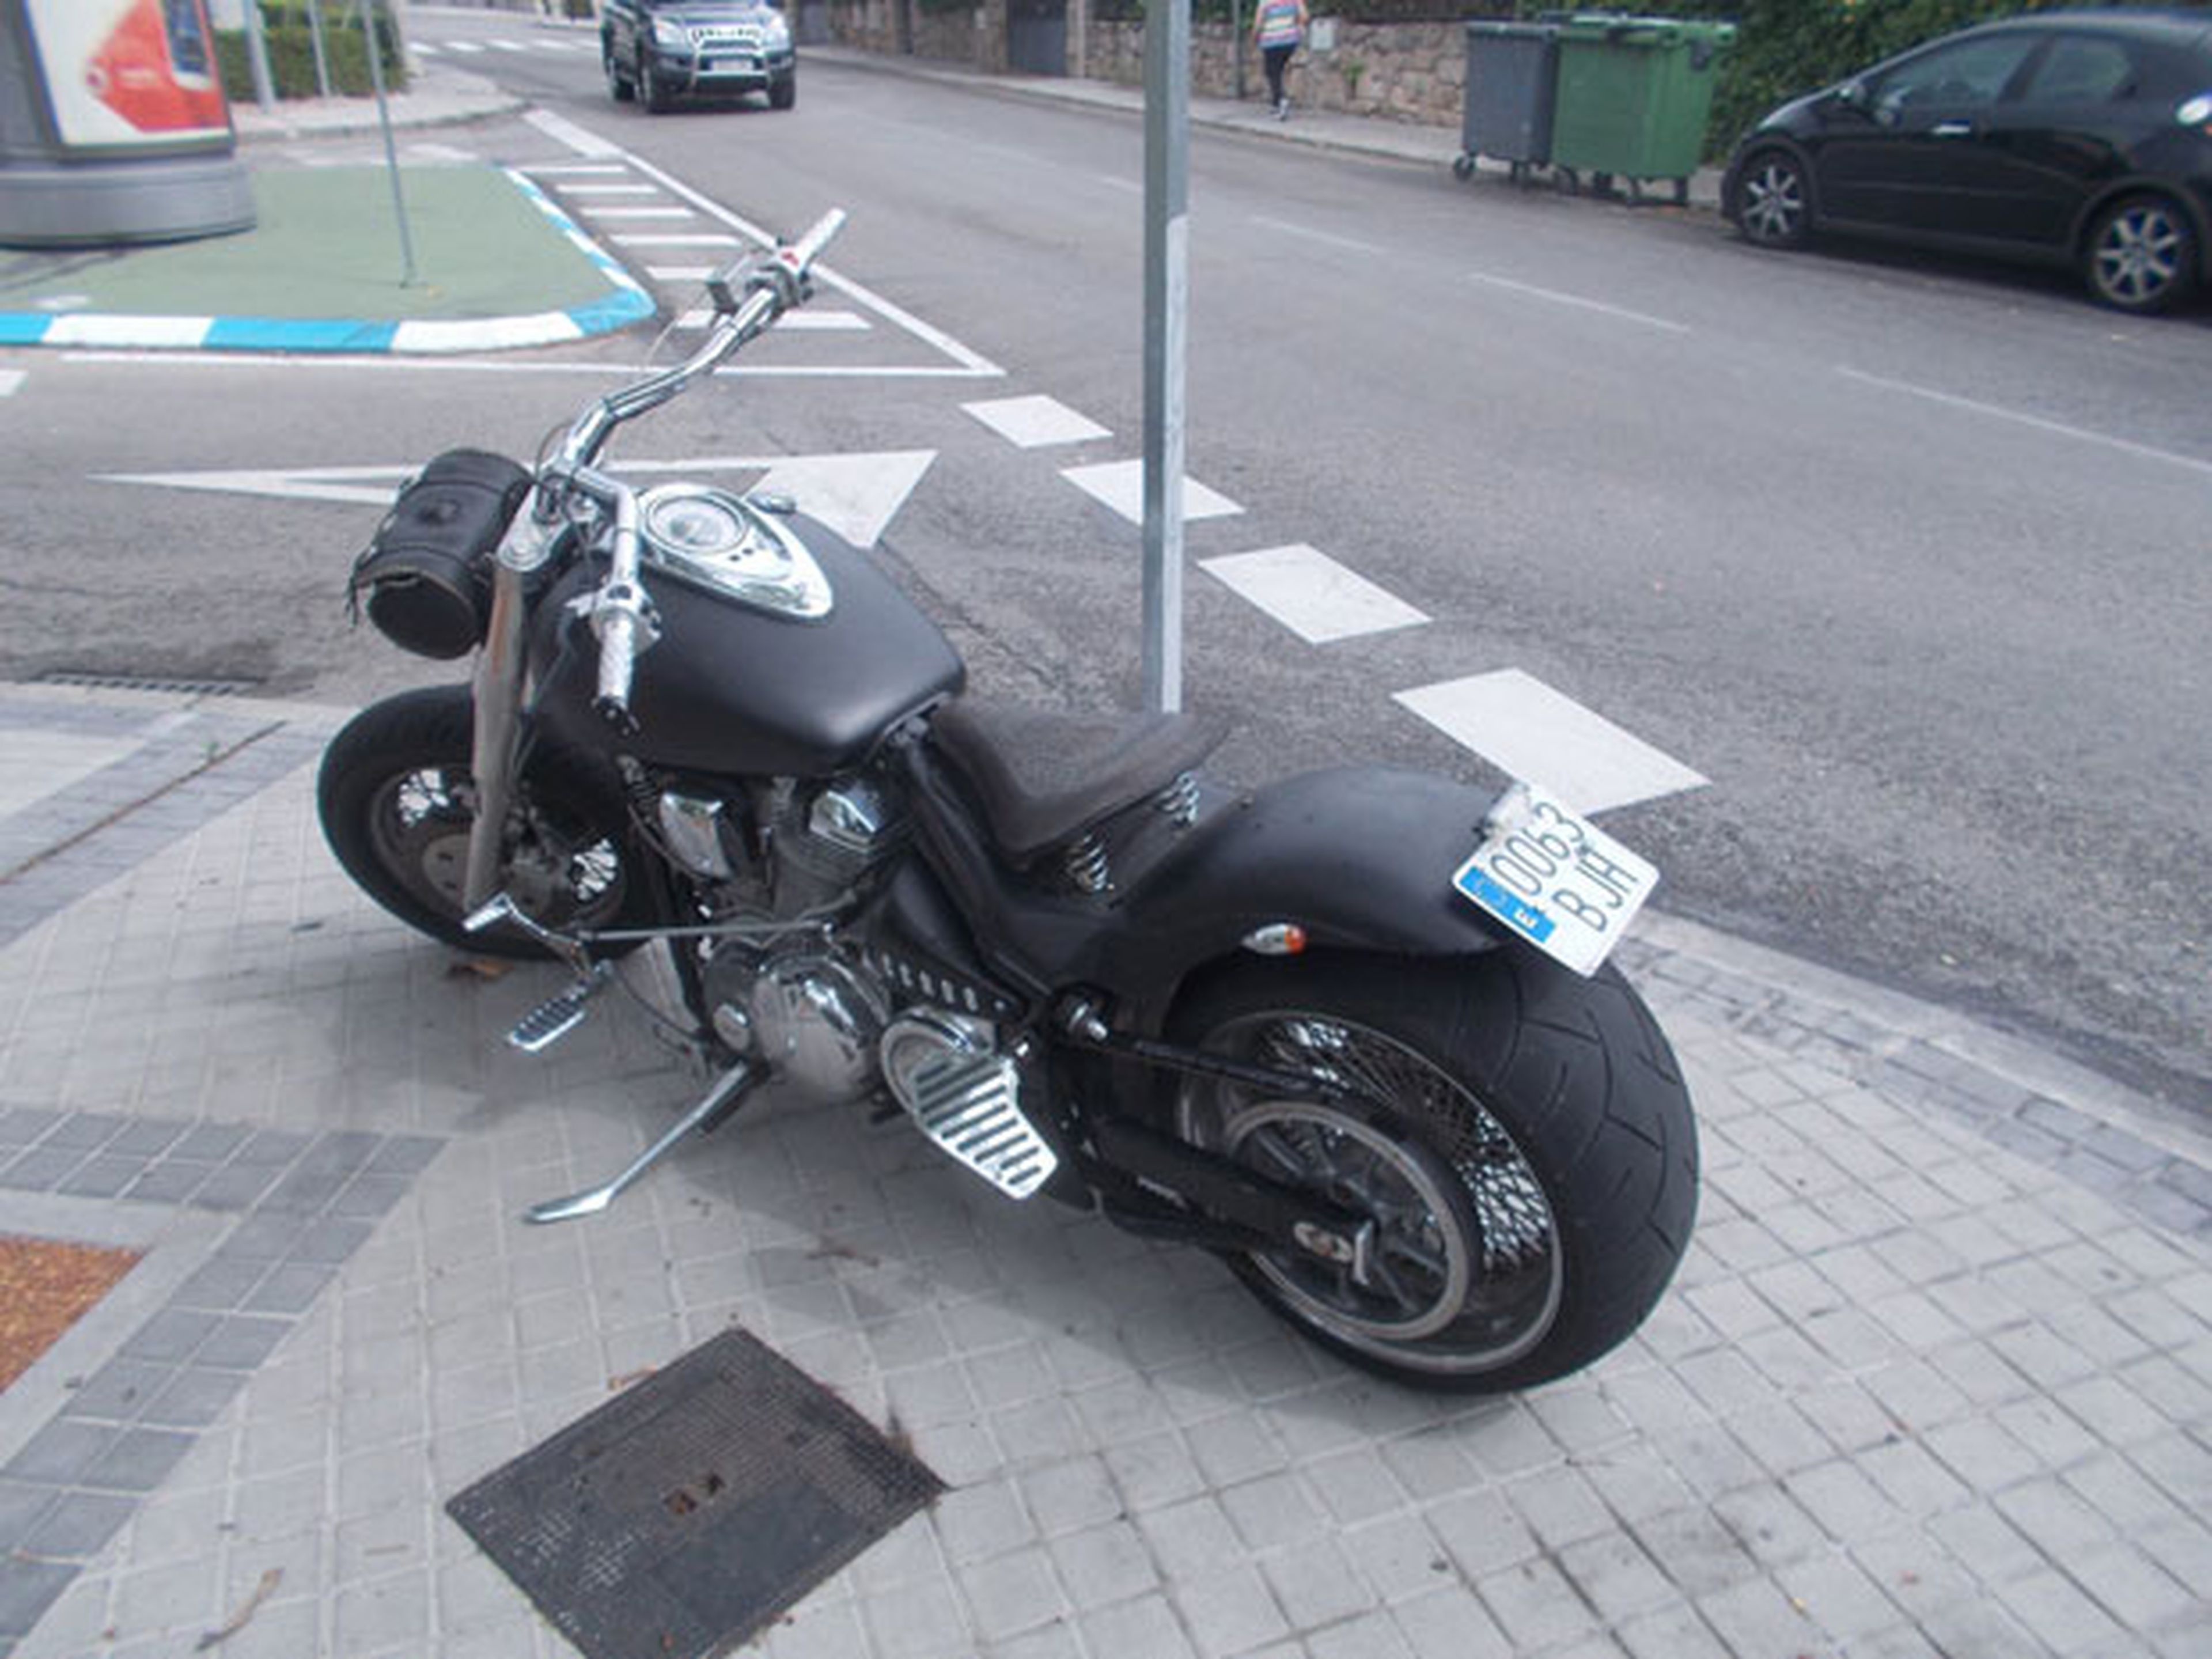 Una moto aparcada en la acera en una calle de Madrid